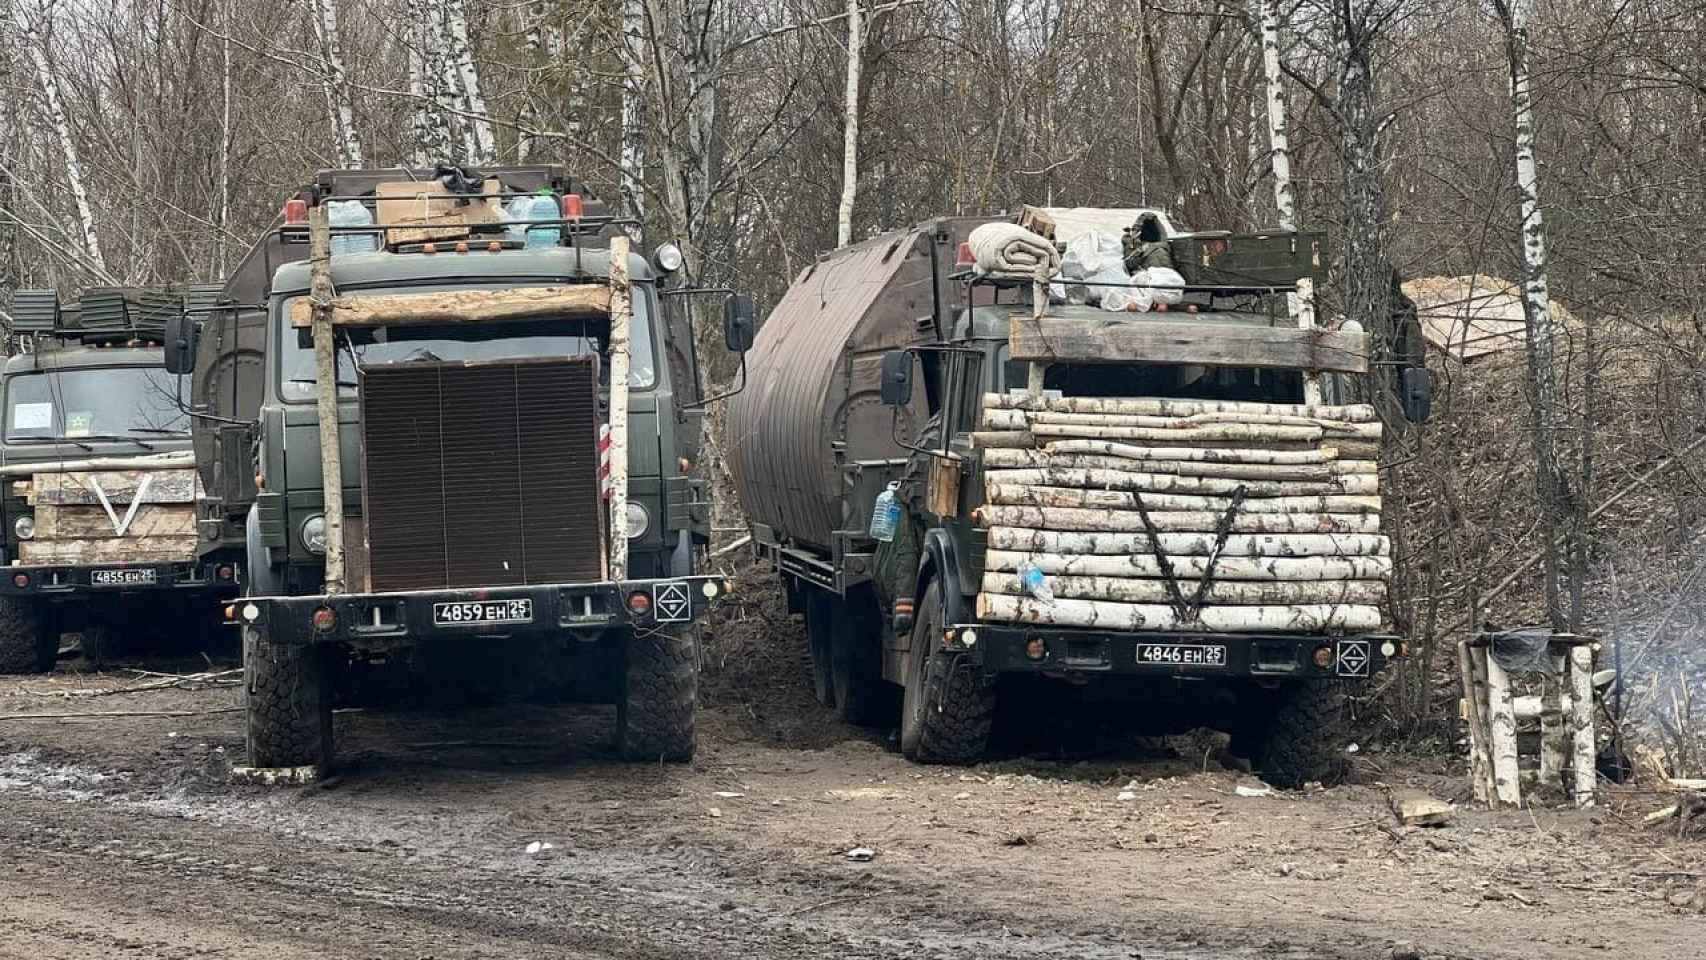 Camiones rusos con tablas de madera y estructuras en la cabina.